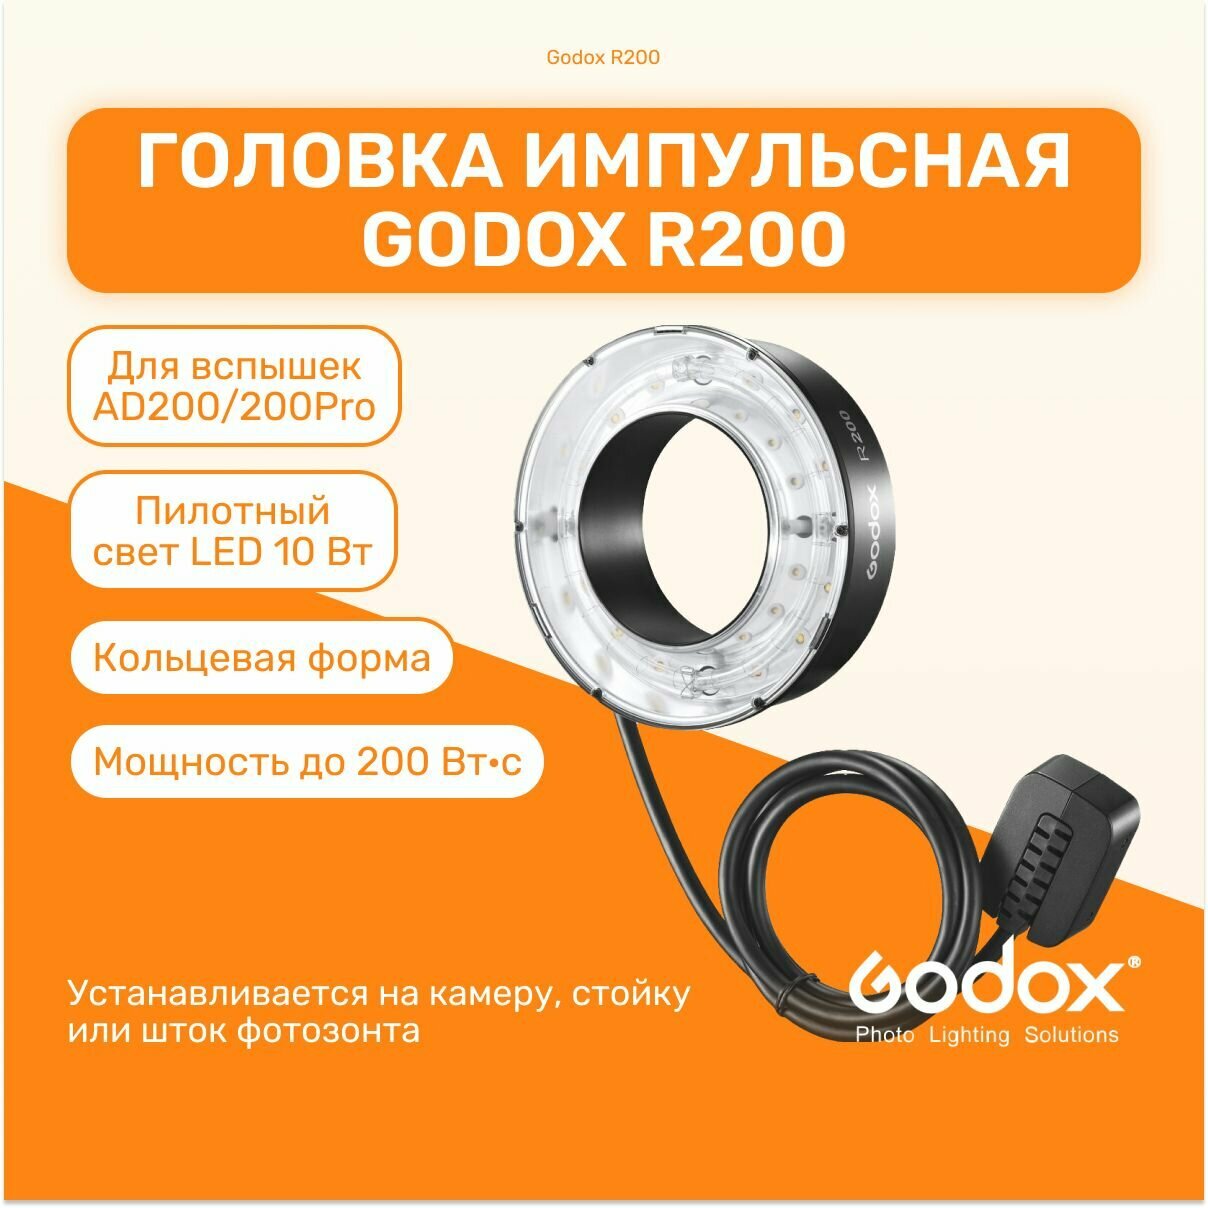 Головка импульсная Godox R200 кольцевая для AD200, импульсный свет для фото съемки мобильной и студийной